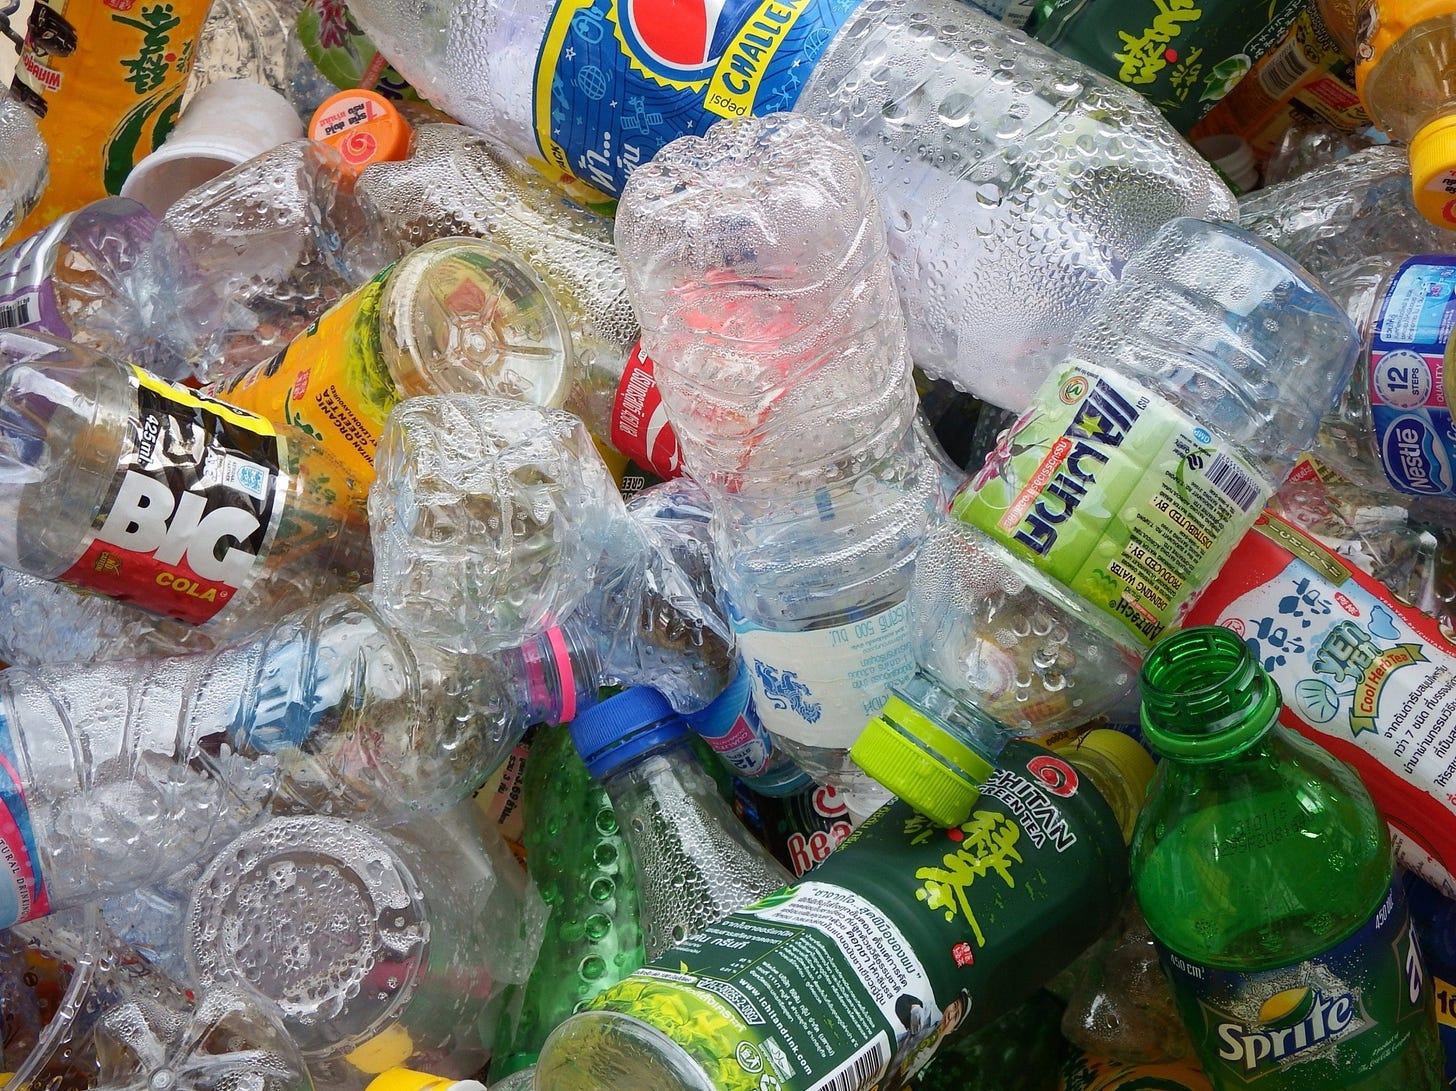 Bạn sẽ muốn được tái chế rác hơn nếu mọi người xung quanh bạn cũng làm như vậy.